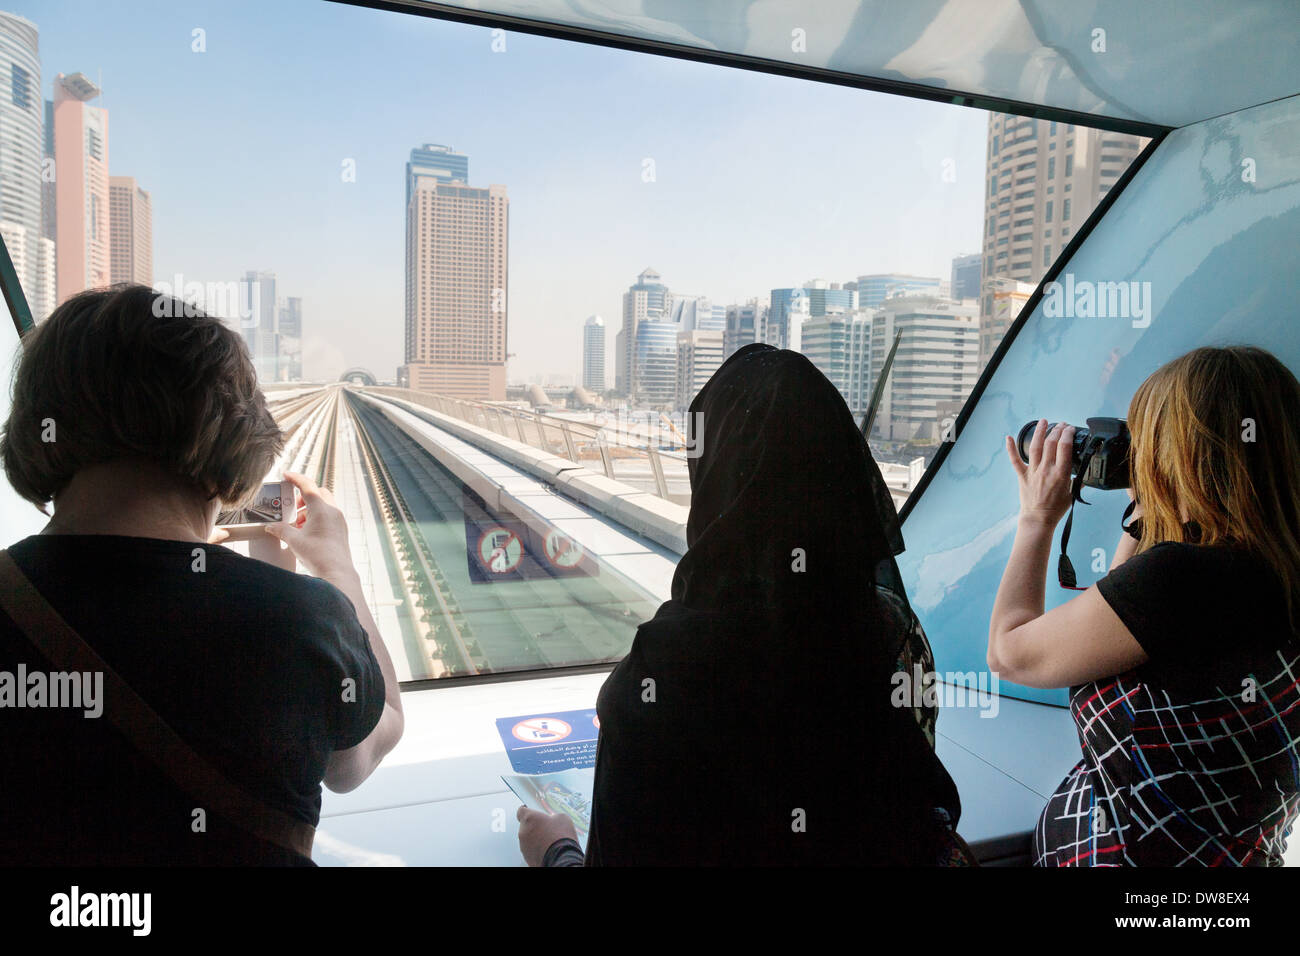 Dubai Metro-Passagiere auf der Vorderseite des Zuges fotografieren durch das Fenster; Dubai, Vereinigte Arabische Emirate, Vereinigte Arabische Emirate, Naher Osten Stockfoto